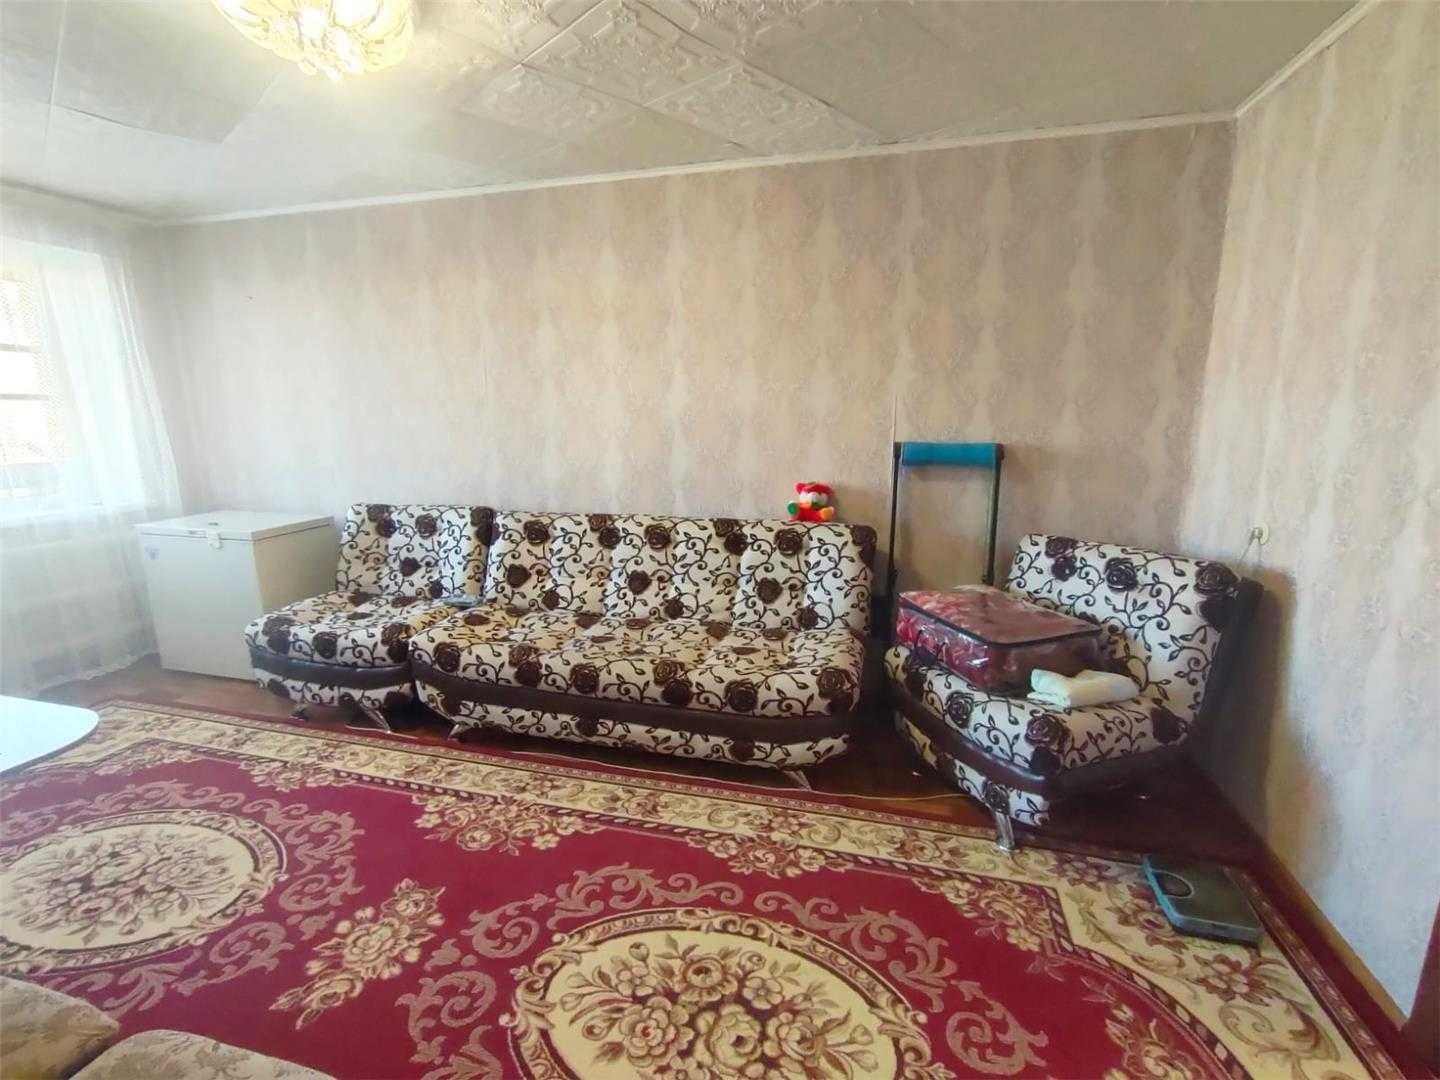 Продается  2-х комнатная квартира в центре Сортировки